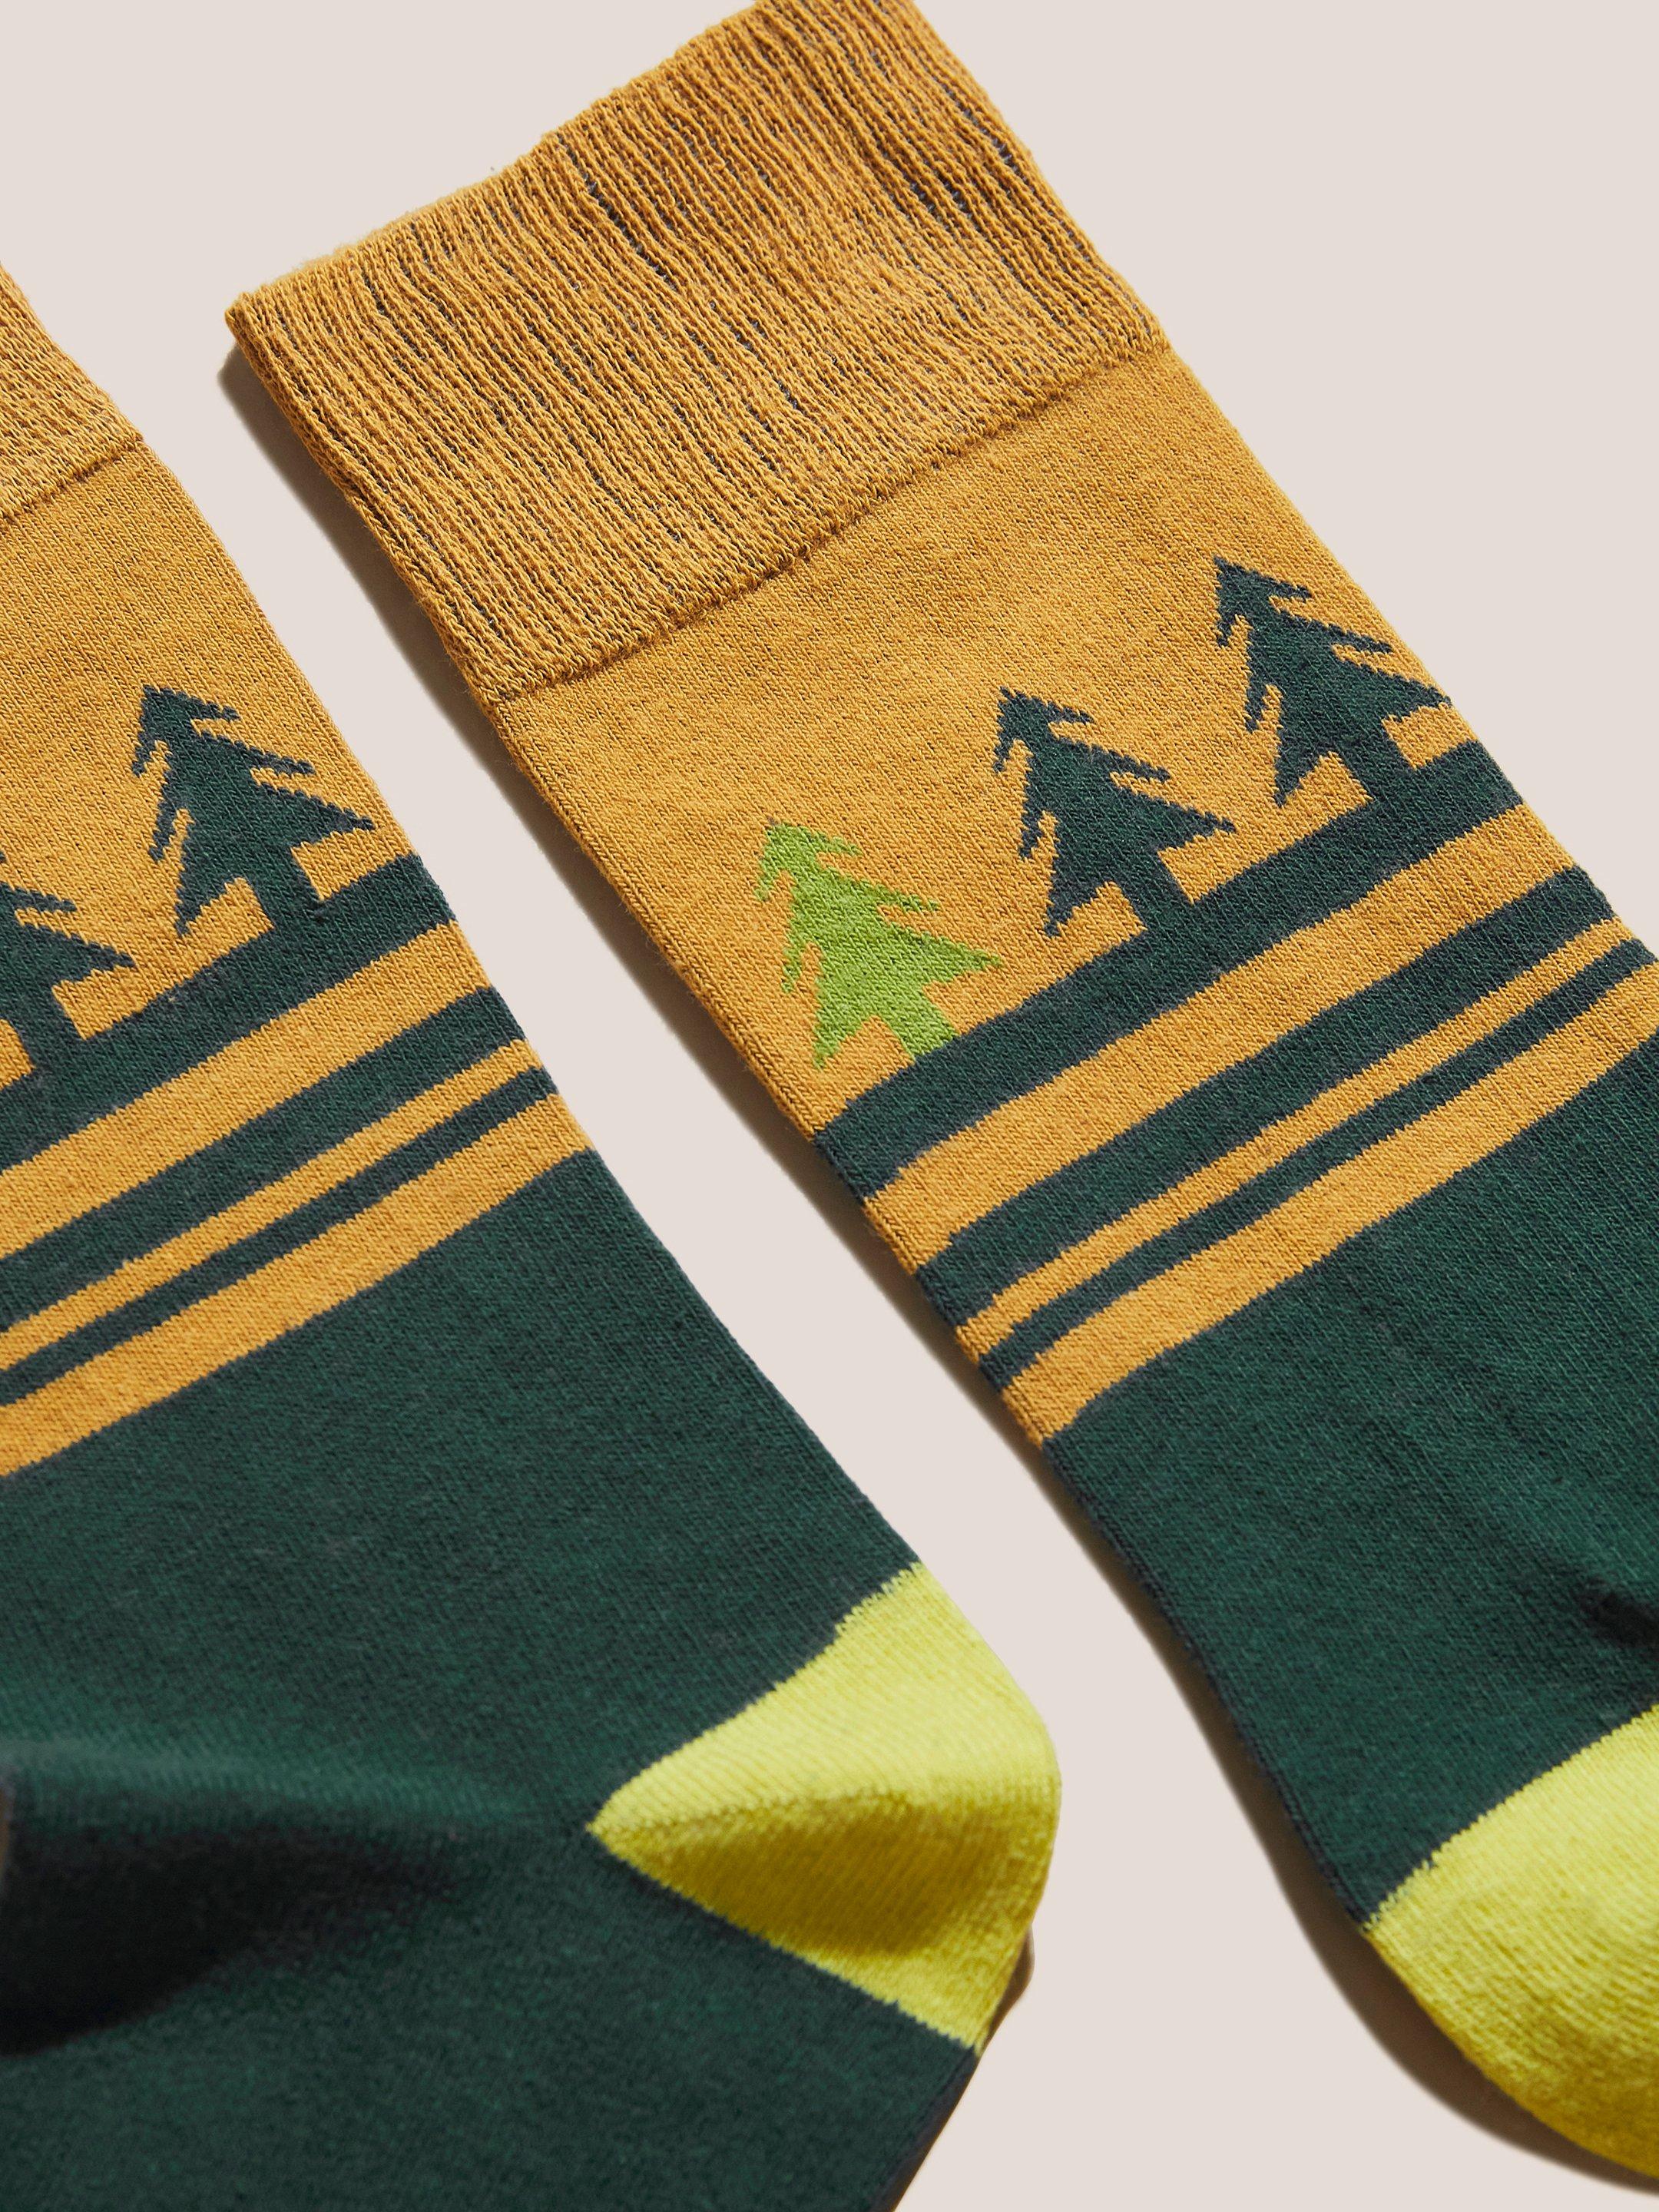 Christmas Tree Socks